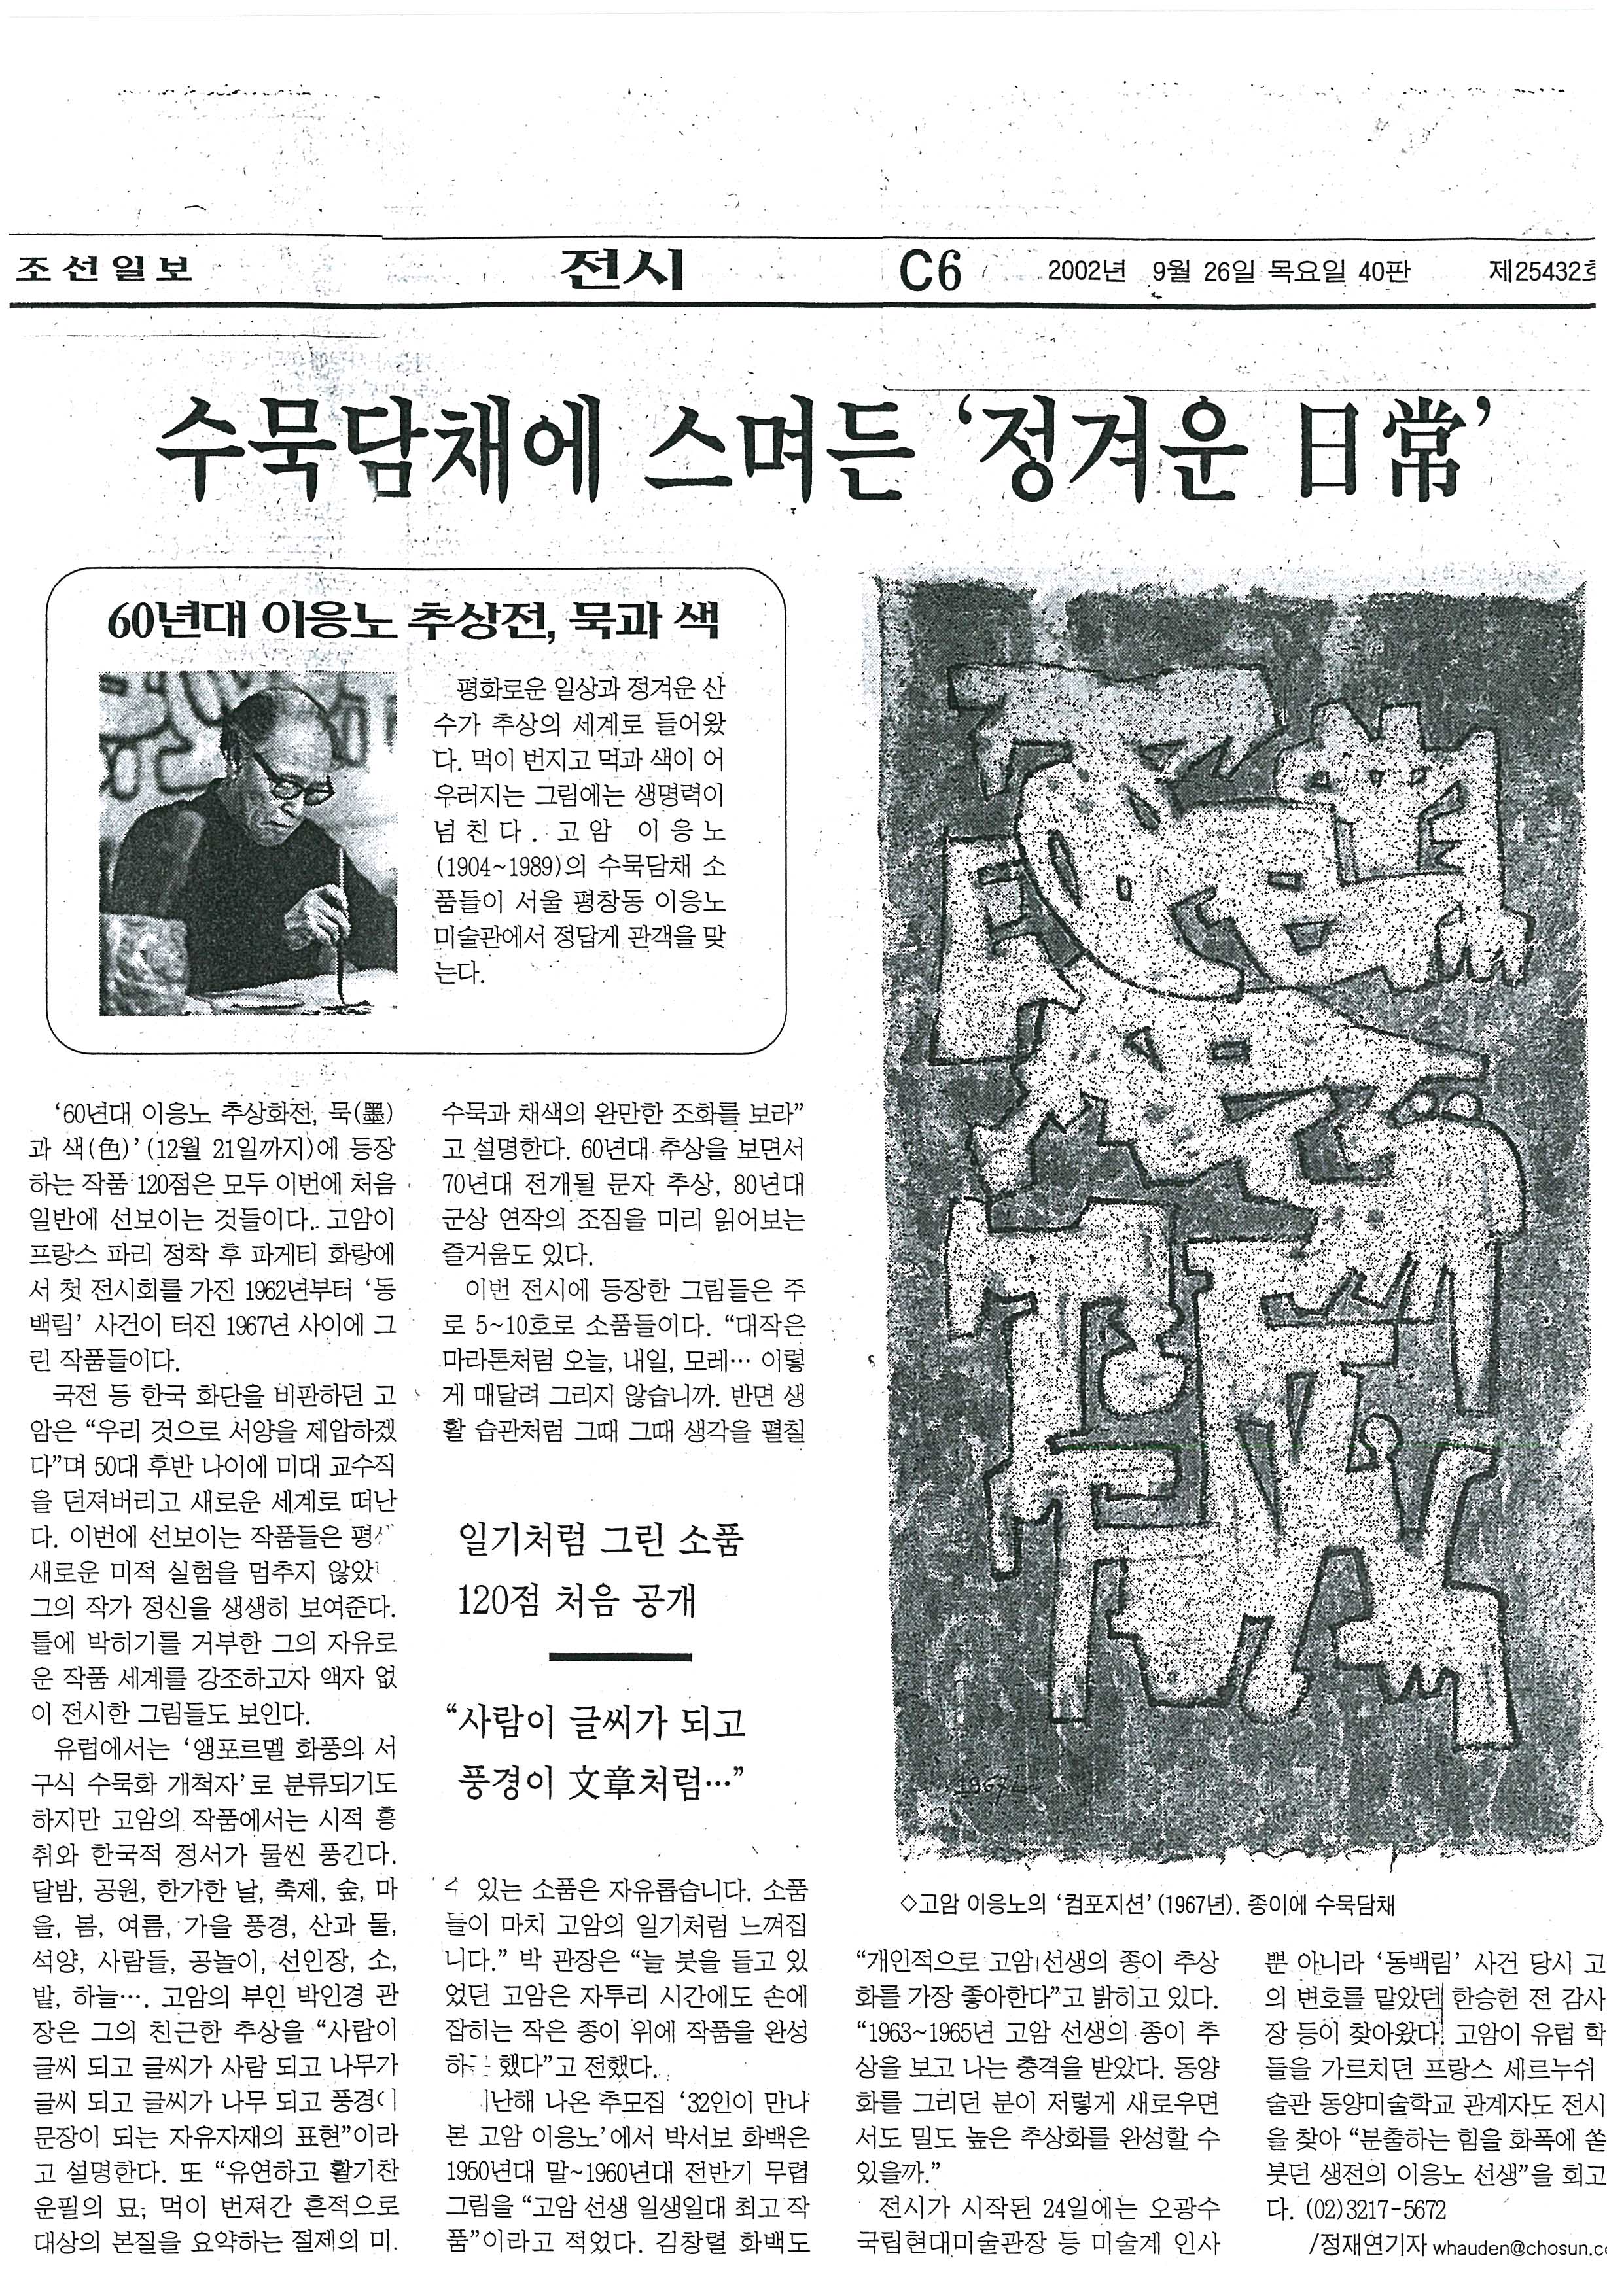 「수묵담채에 스며든 '정겨운 일상'」, 『조선일보』